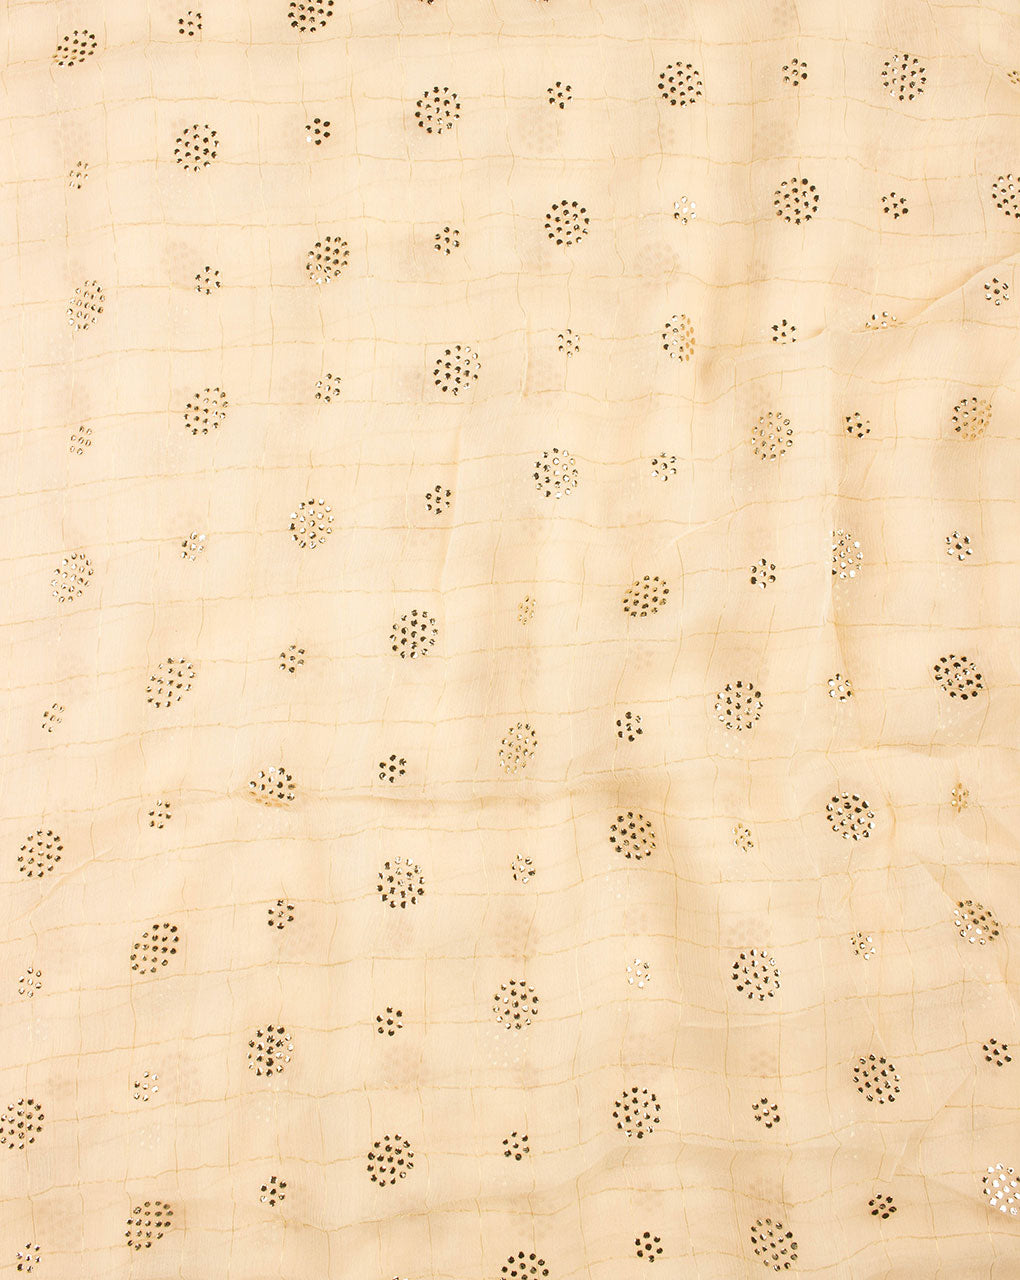 Mukaish Work Zari Checks Embriodered Chinnon Chiffon Fabric - Fabriclore.com